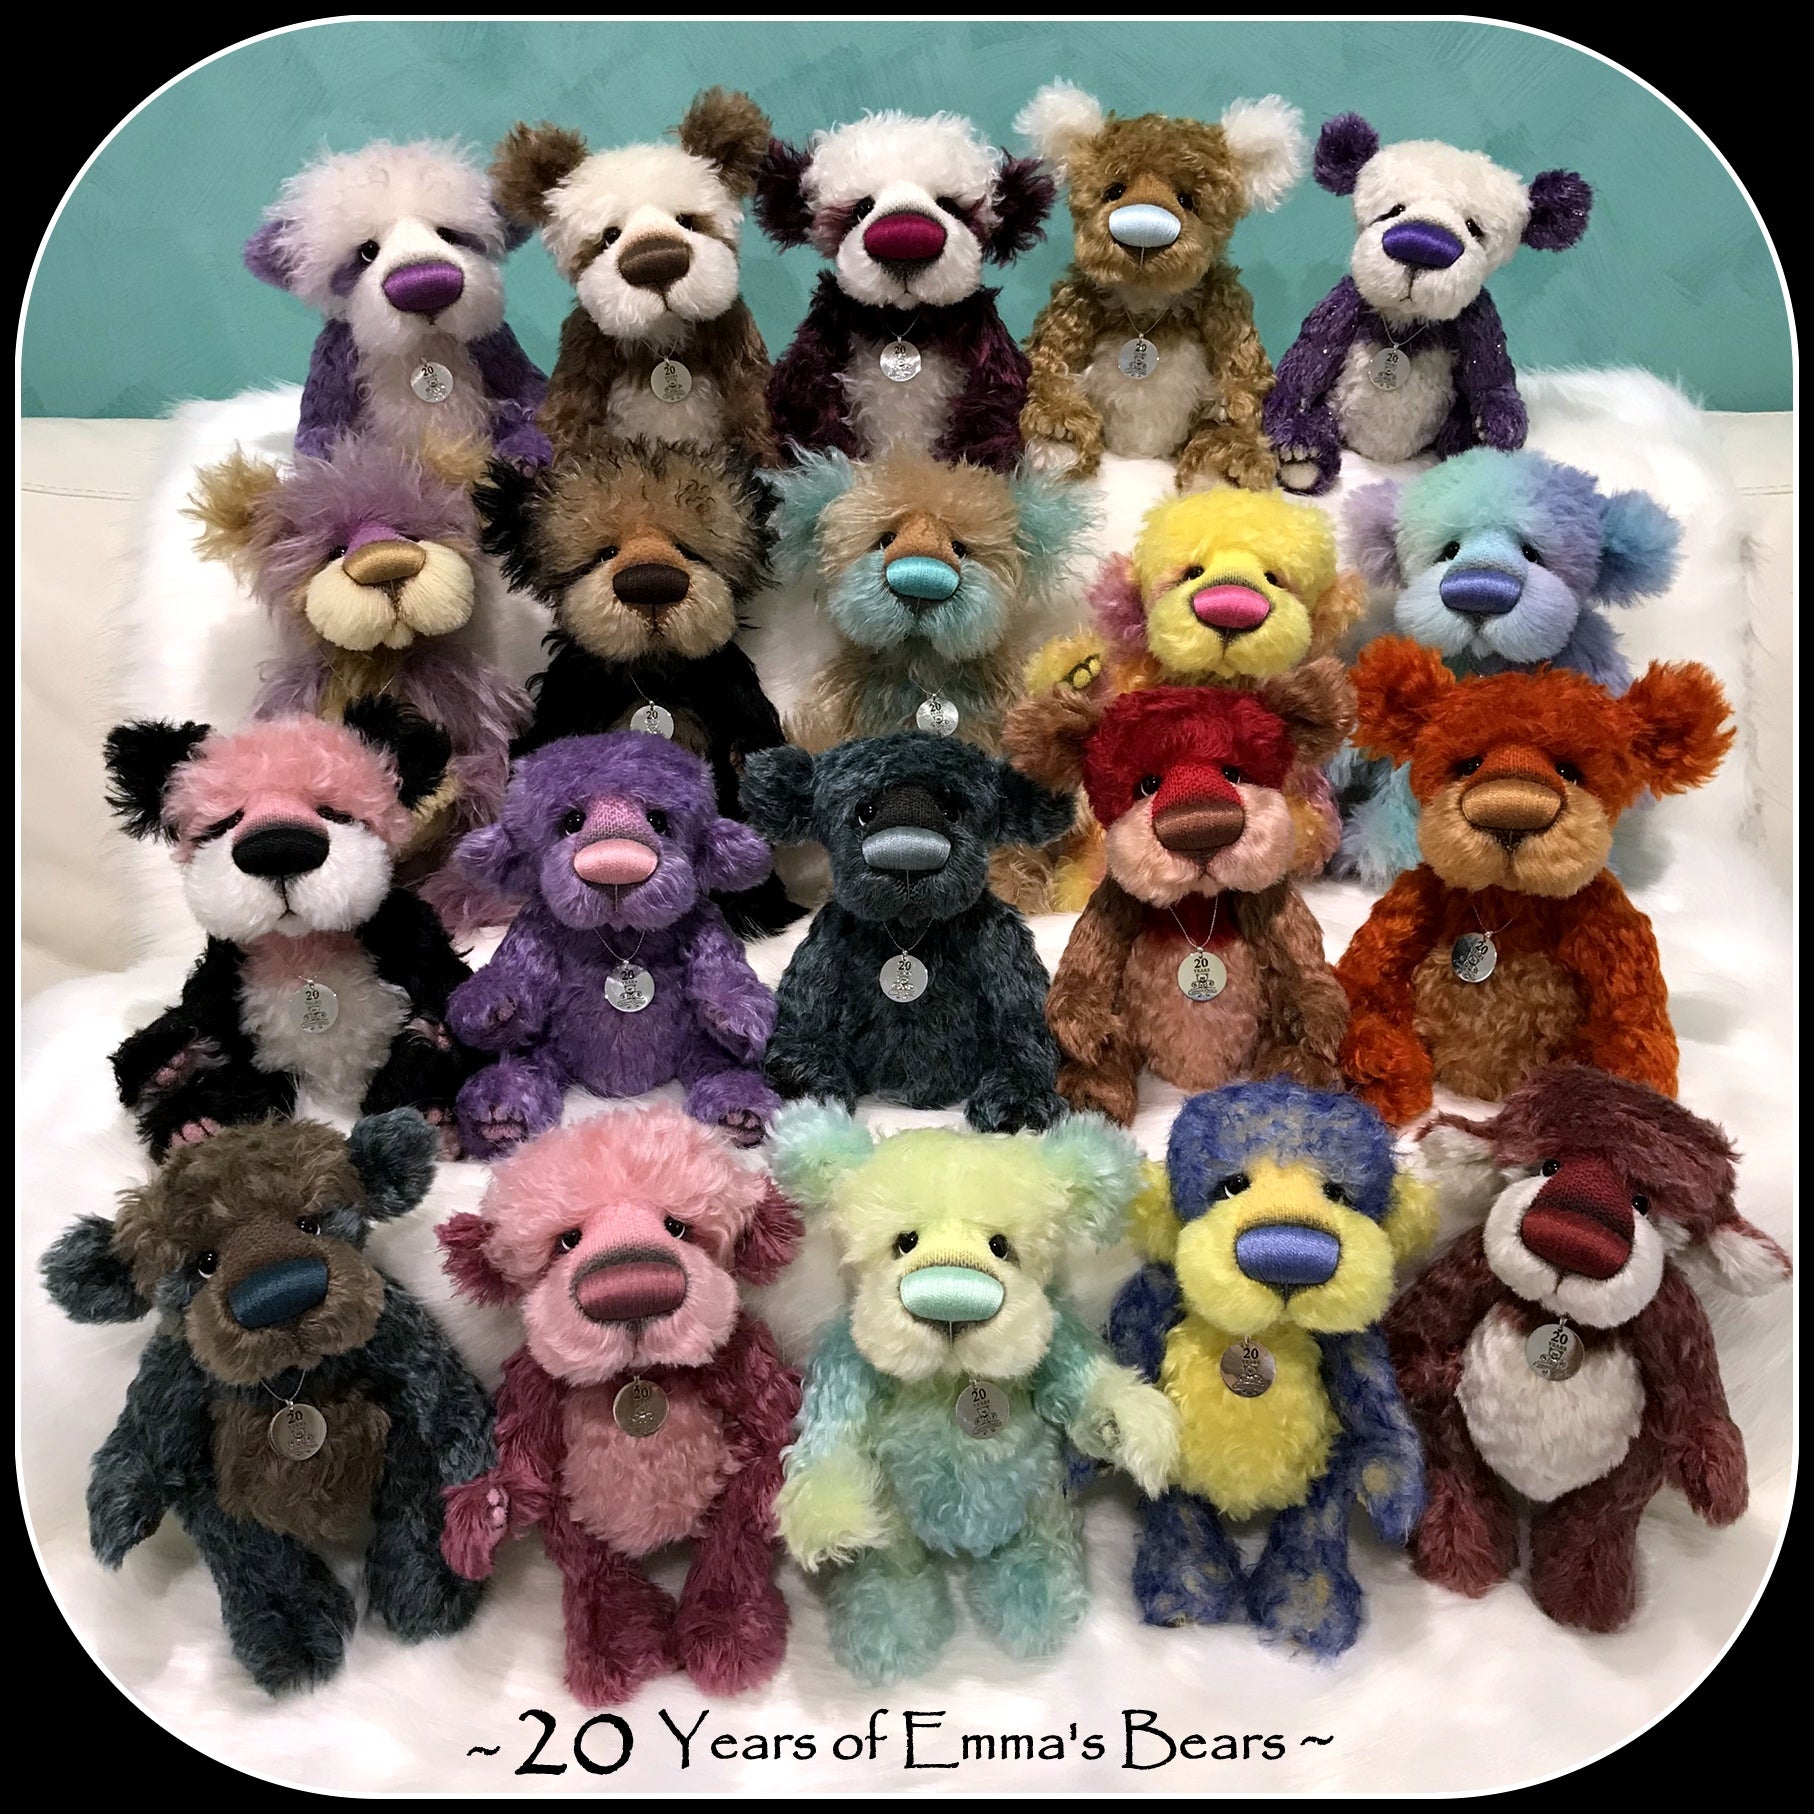 Riker - 20 Years of Emma's Bears Commemorative Teddy - OOAK in a series